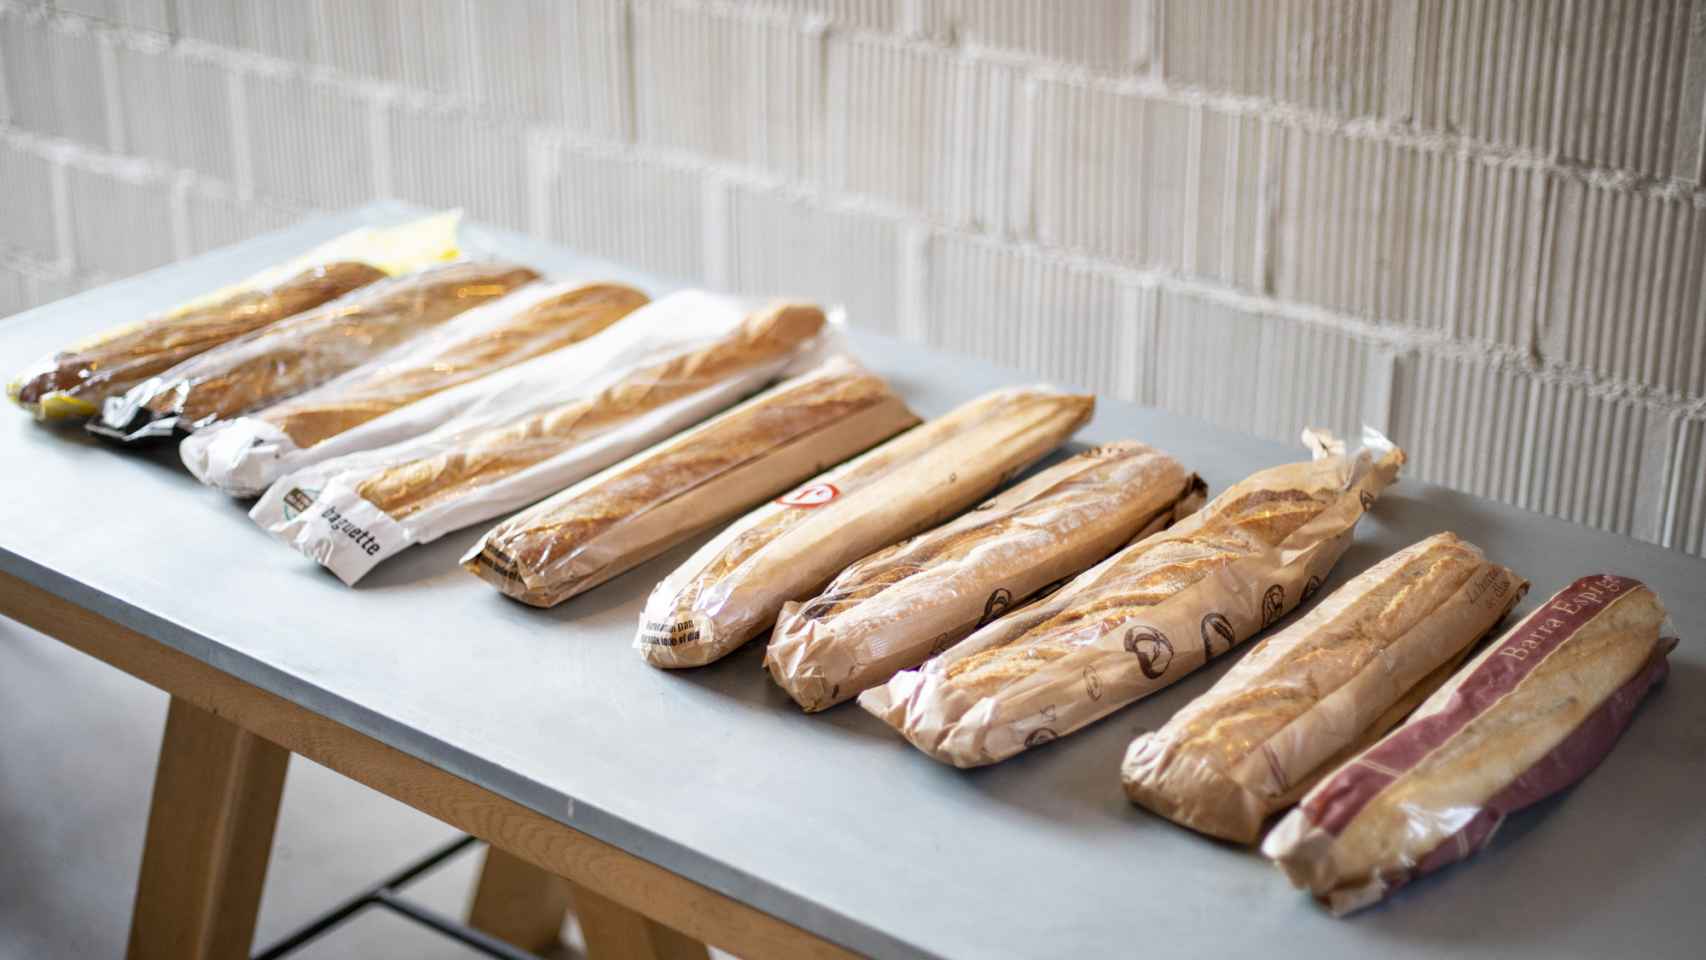 Los 10 panes del supermercado comprados para la prueba.